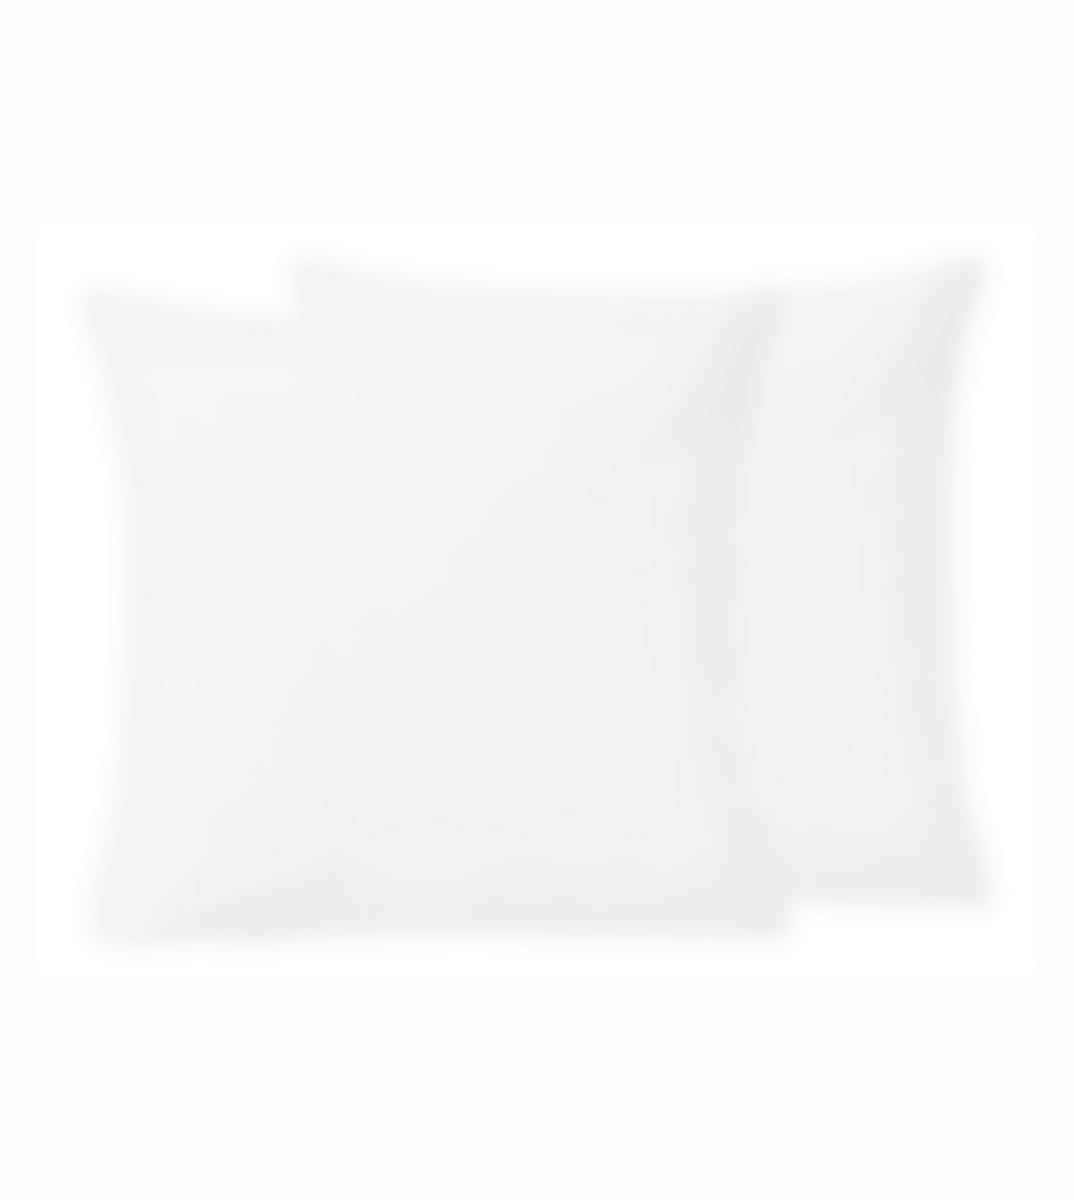 Sleepnight kussensloop wit perkalkatoen set van 2 50 x 70 cm